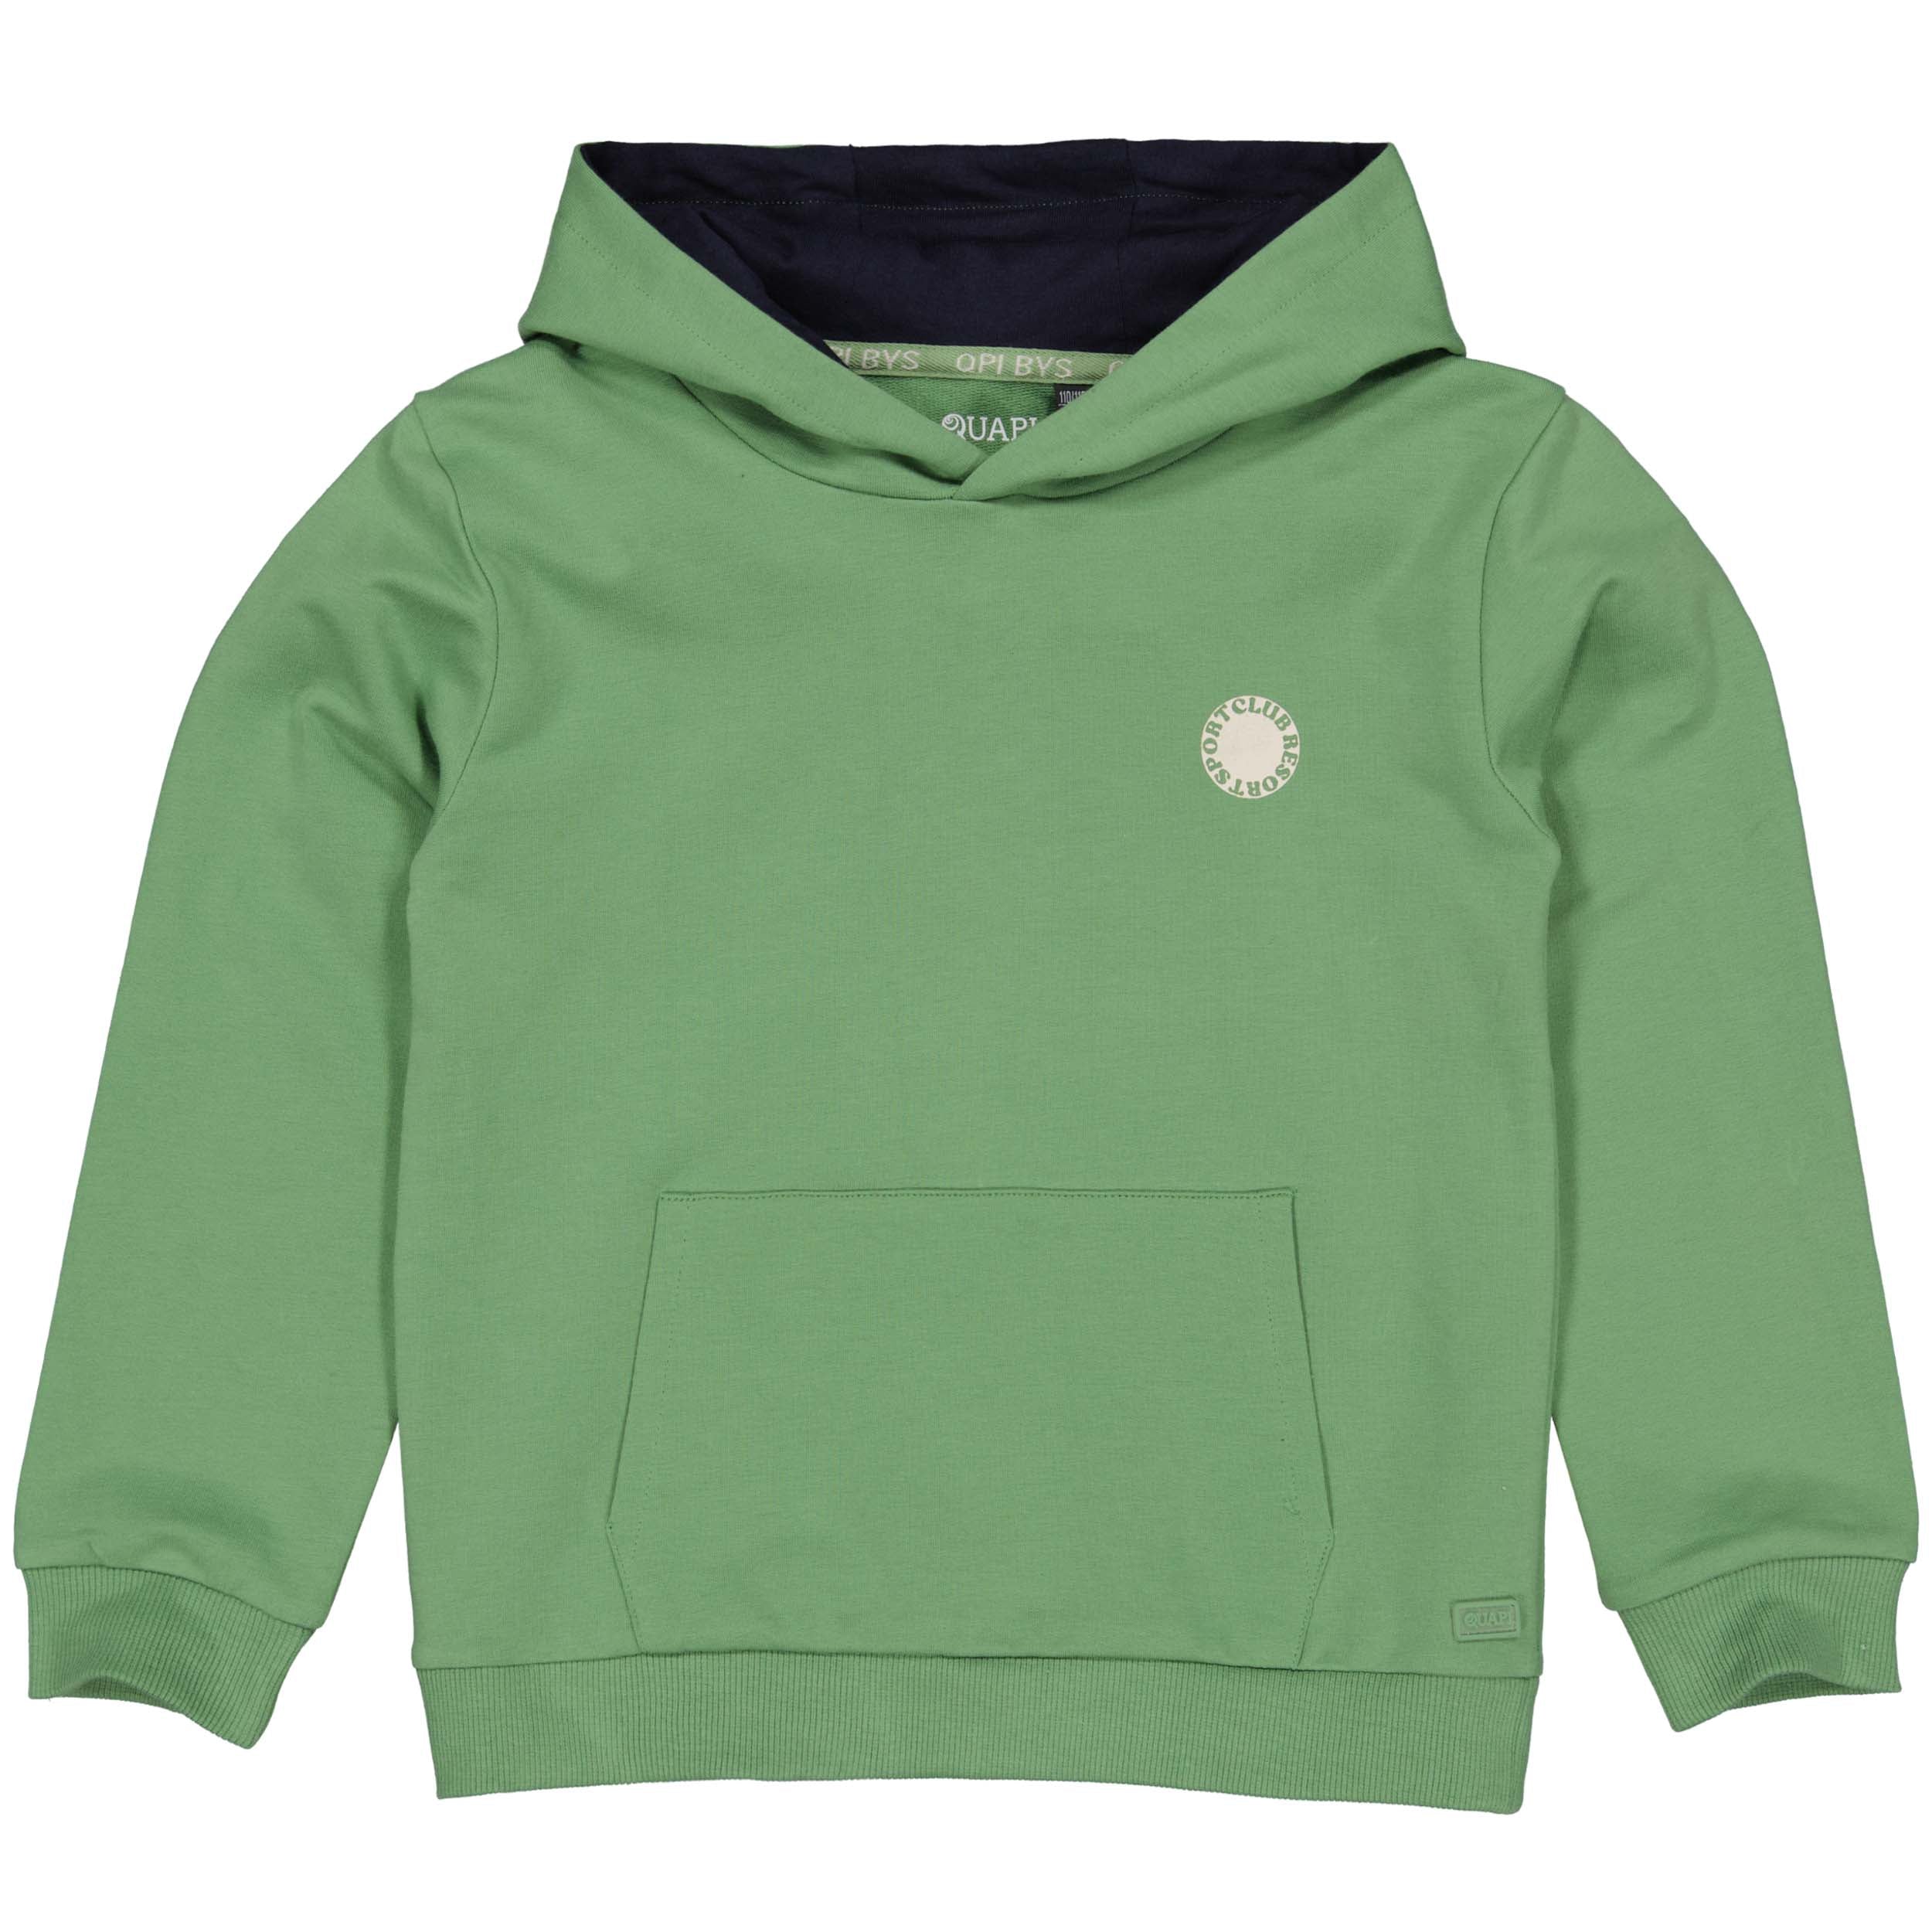 Jongens Hooded sweater BERTQS241 van Quapi in de kleur Green in maat 122-128.